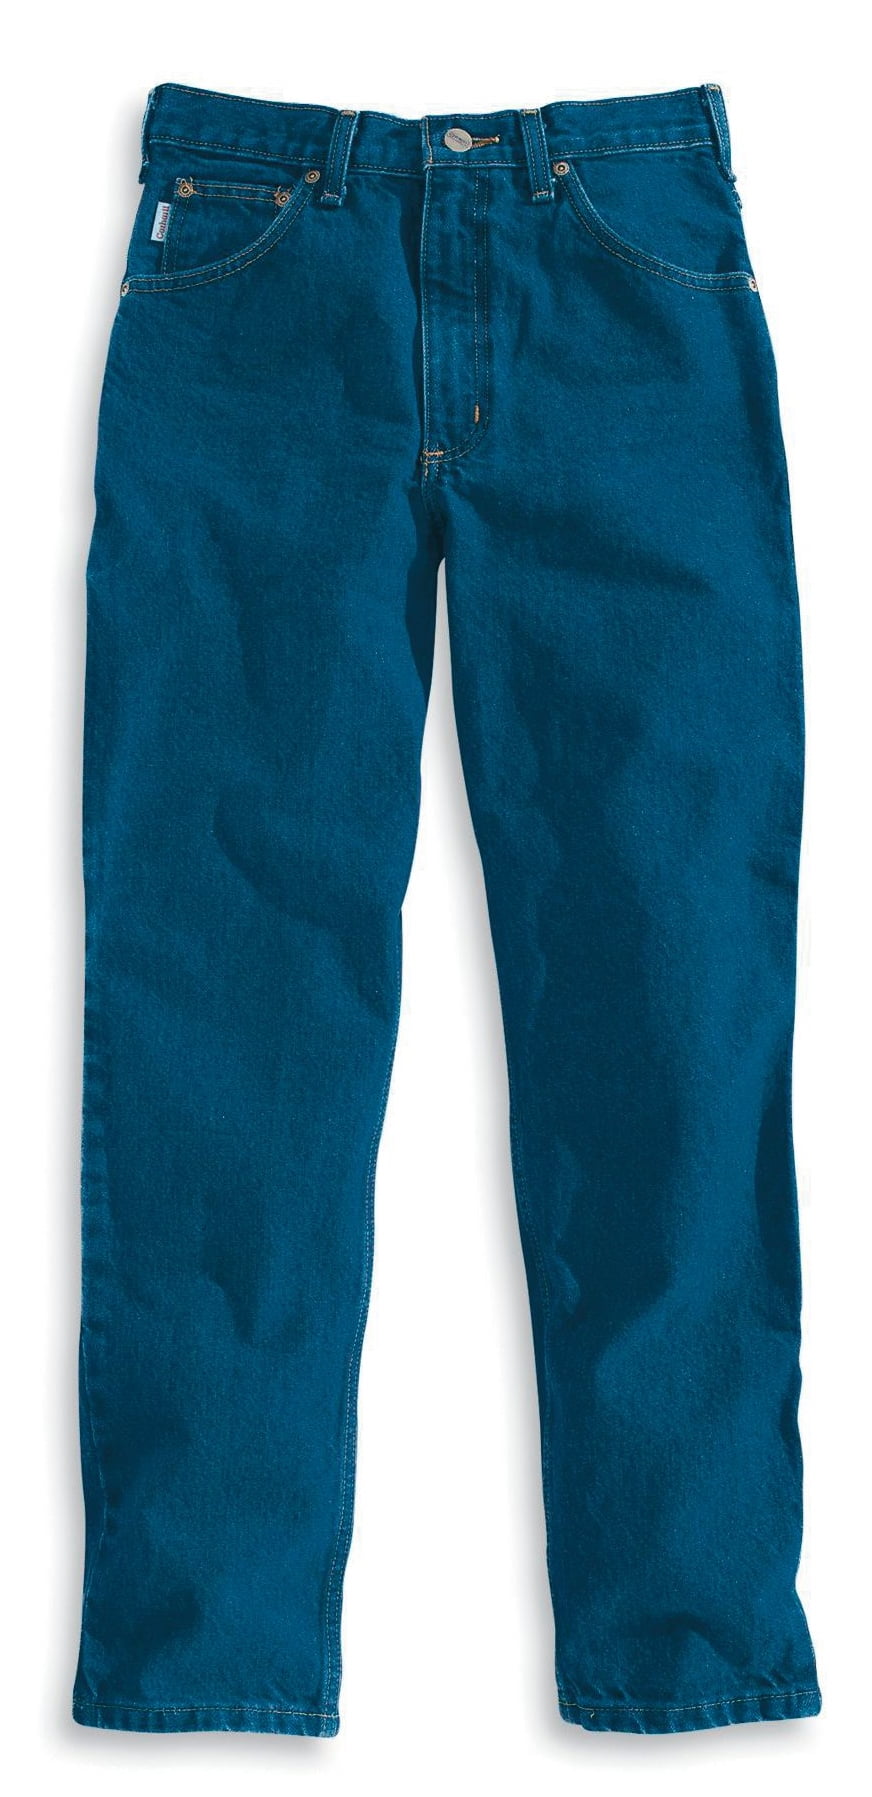 Carhartt - Carhartt Men's Relaxed Fit Tapered Leg Jeans - Walmart.com ...